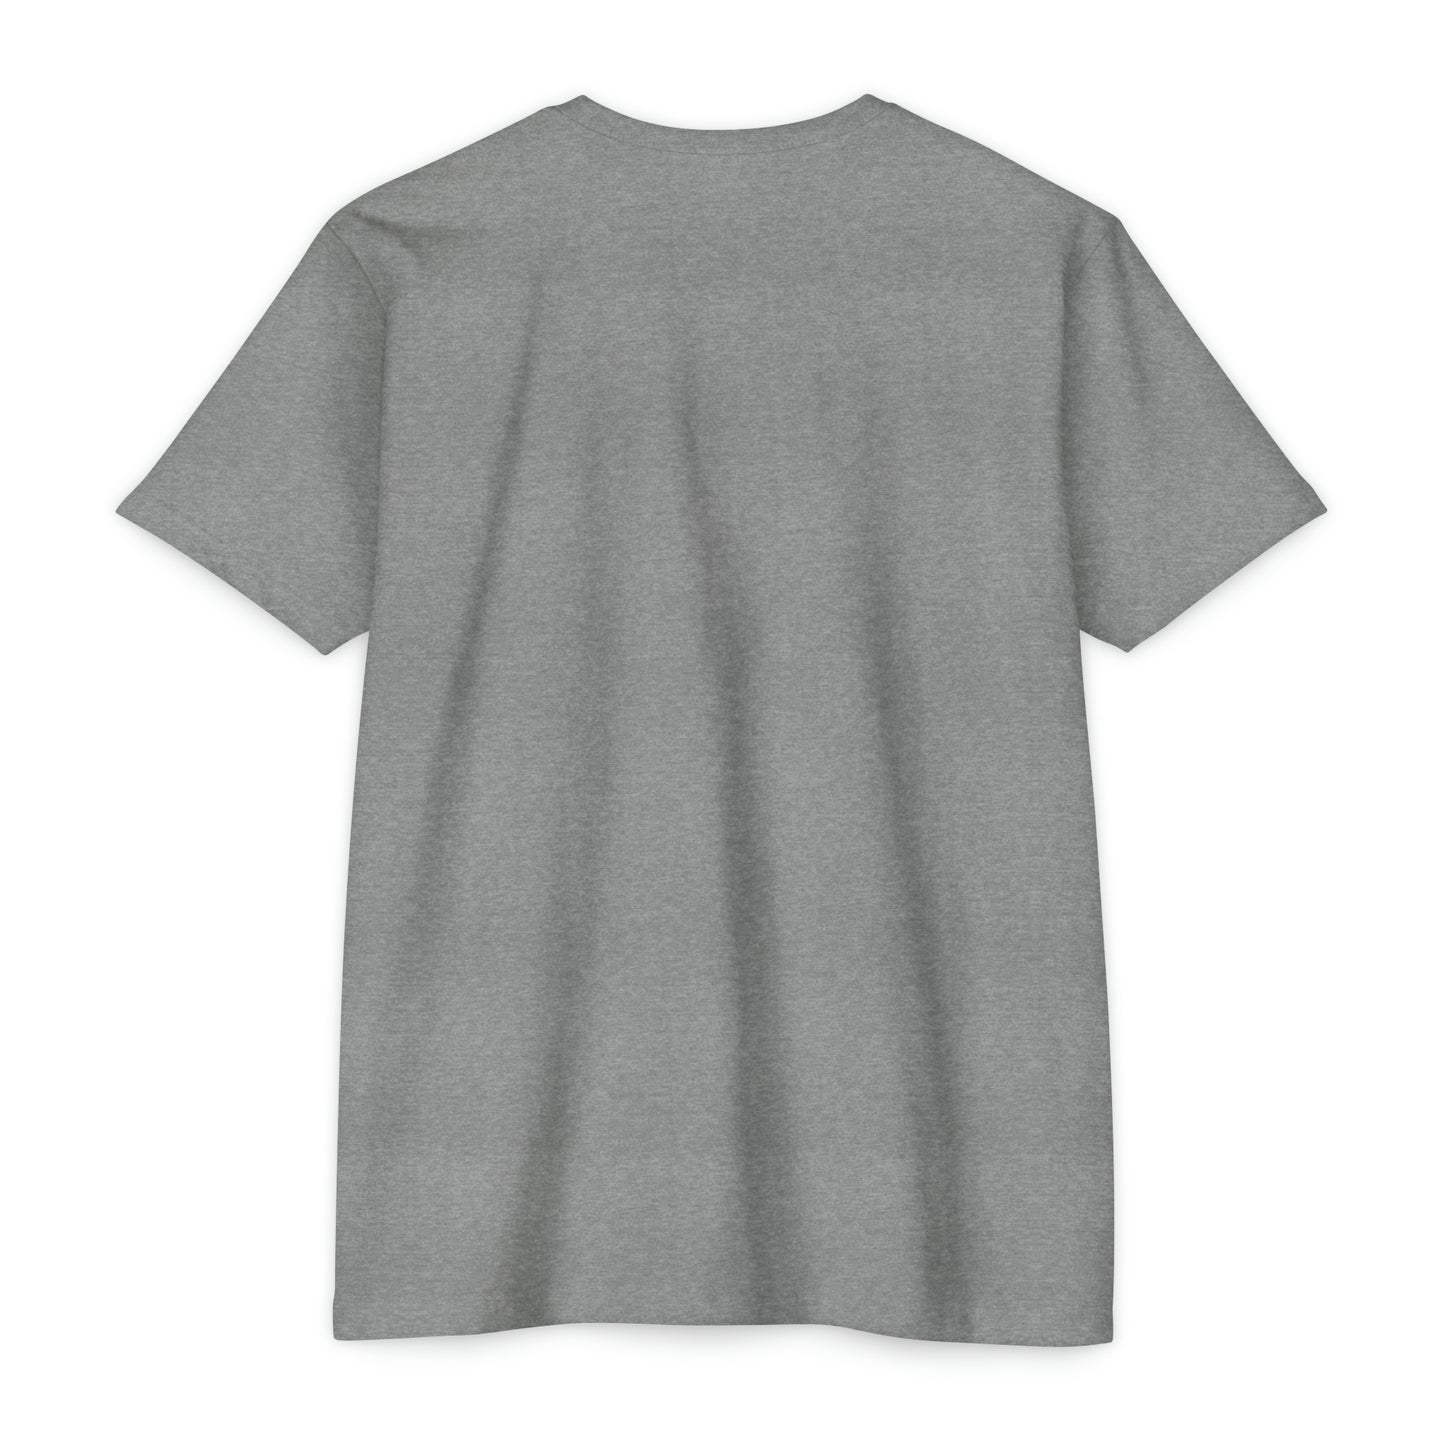 9A, HELLS KITCHEN, Unisex CVC Jersey T-shirt